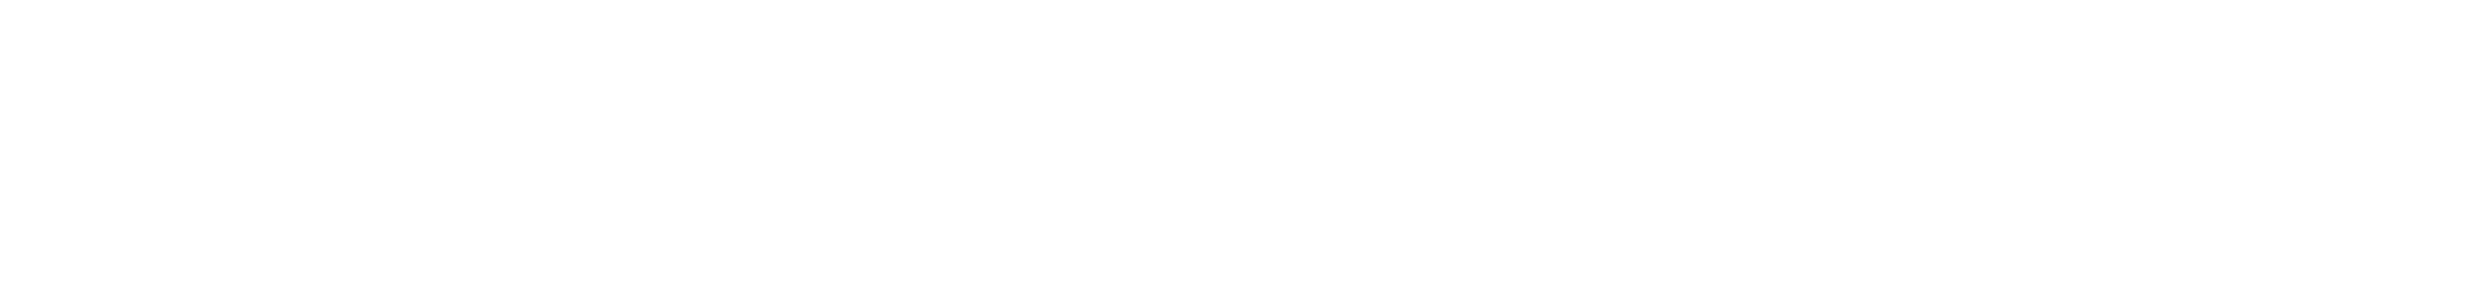 Howard Russell Hill logo